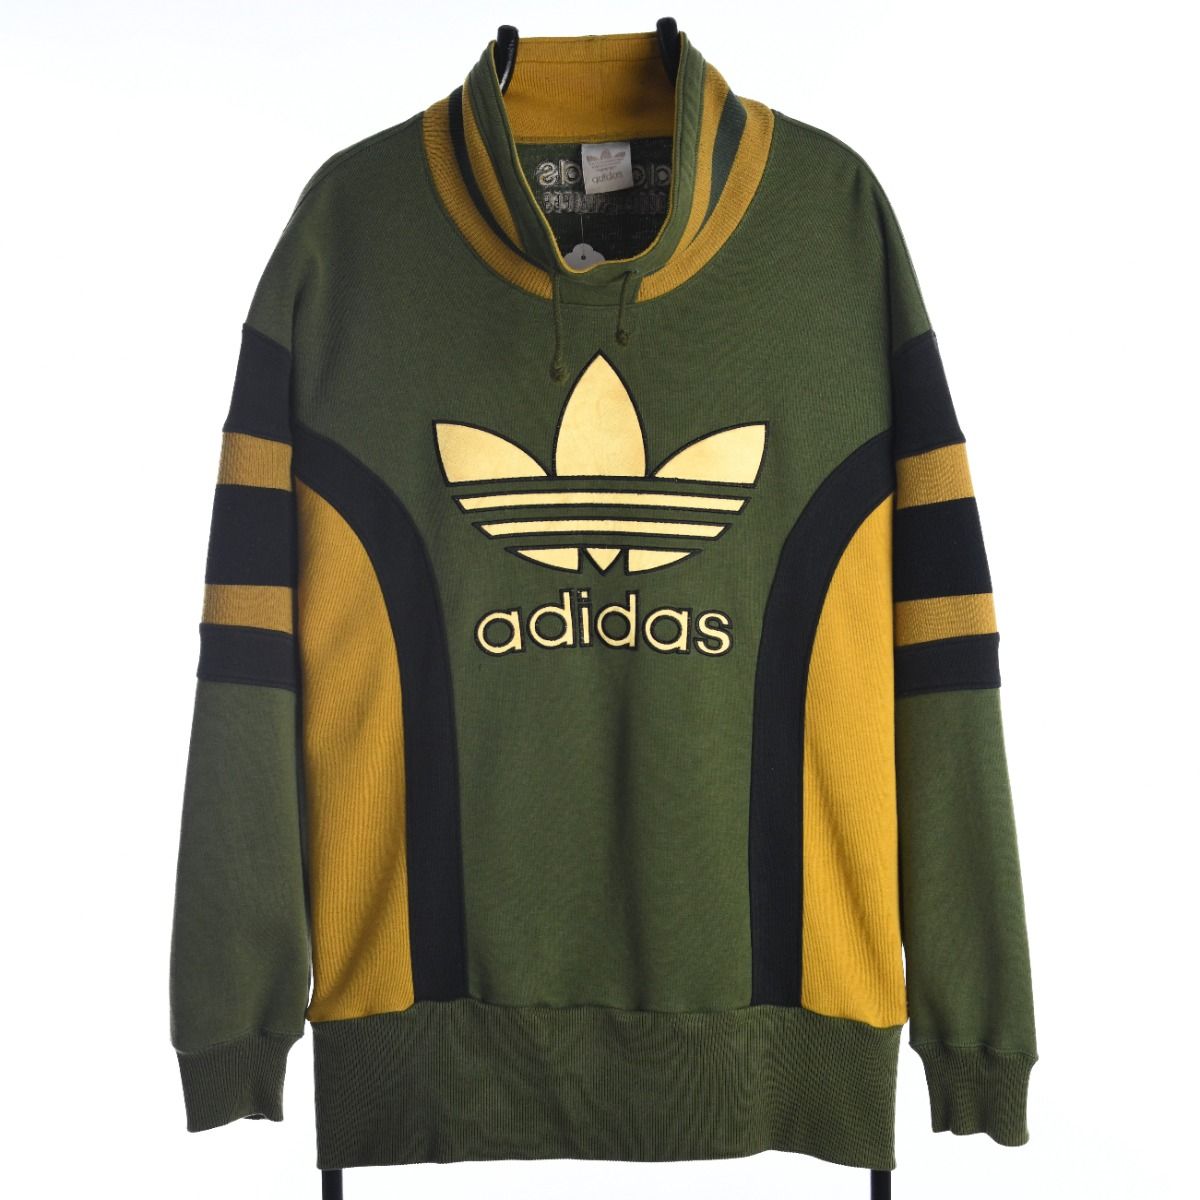 Adidas 1990s Sweatshirt